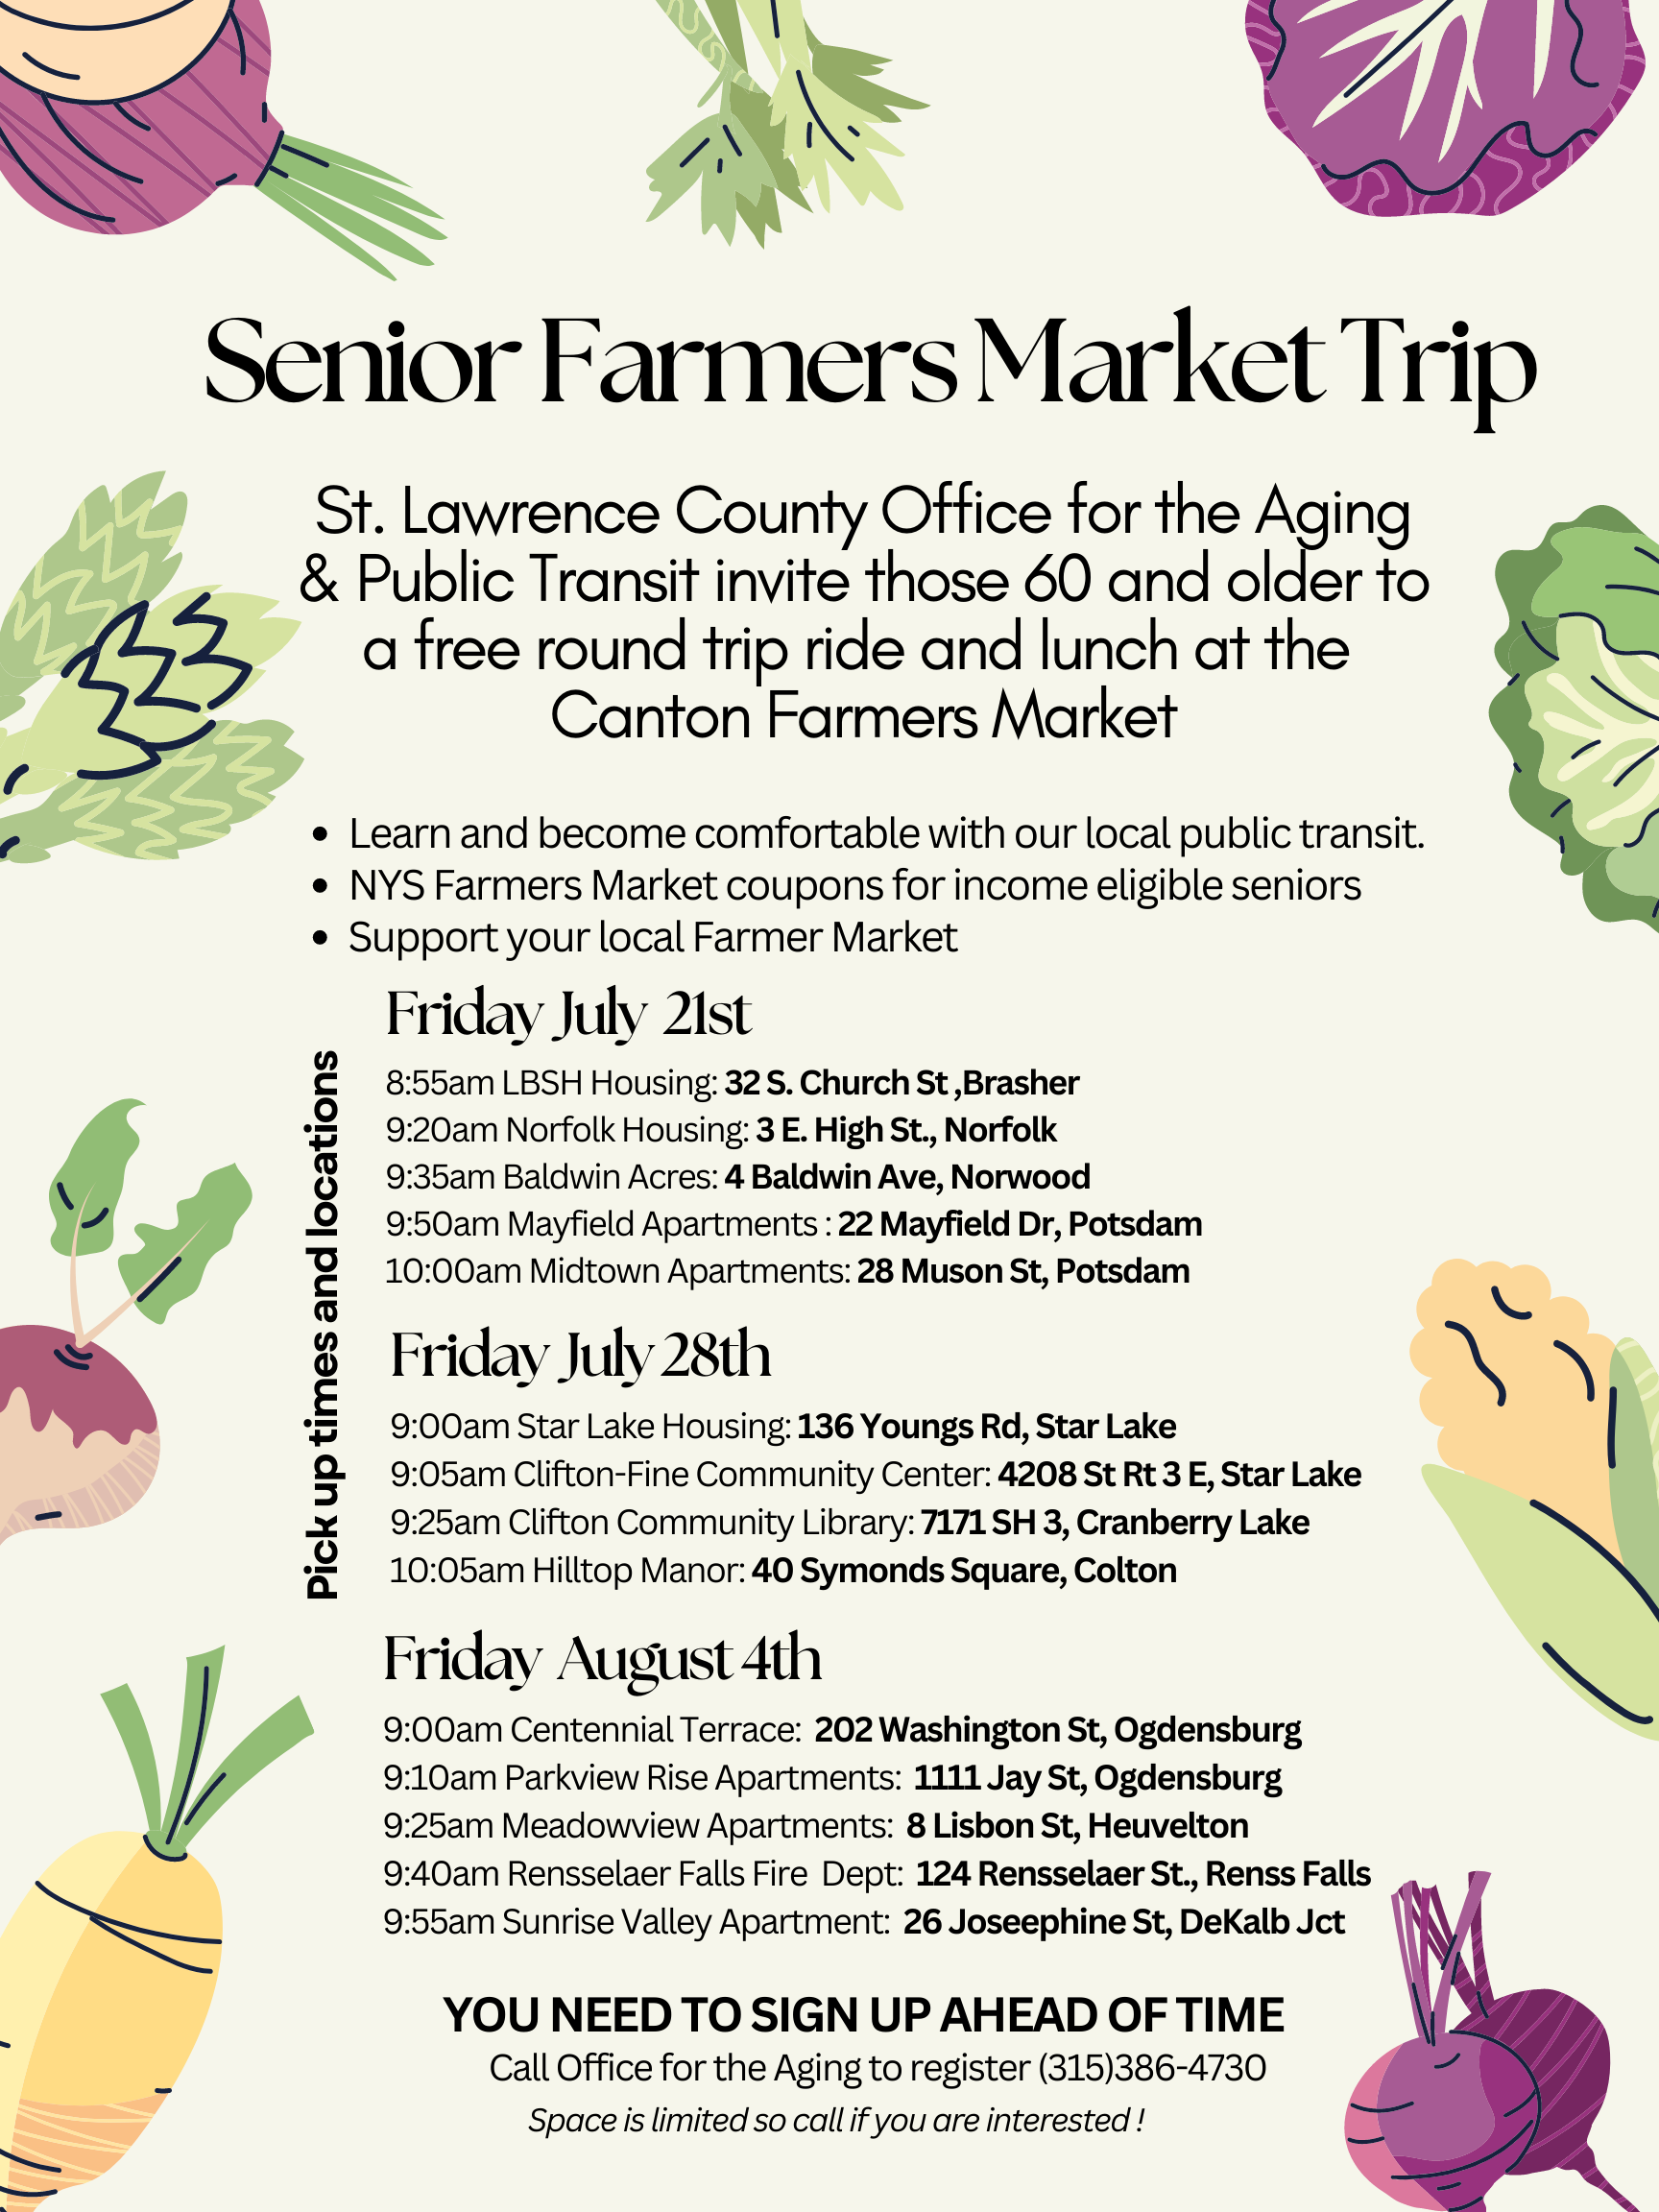 Senior Farmer Market Trips